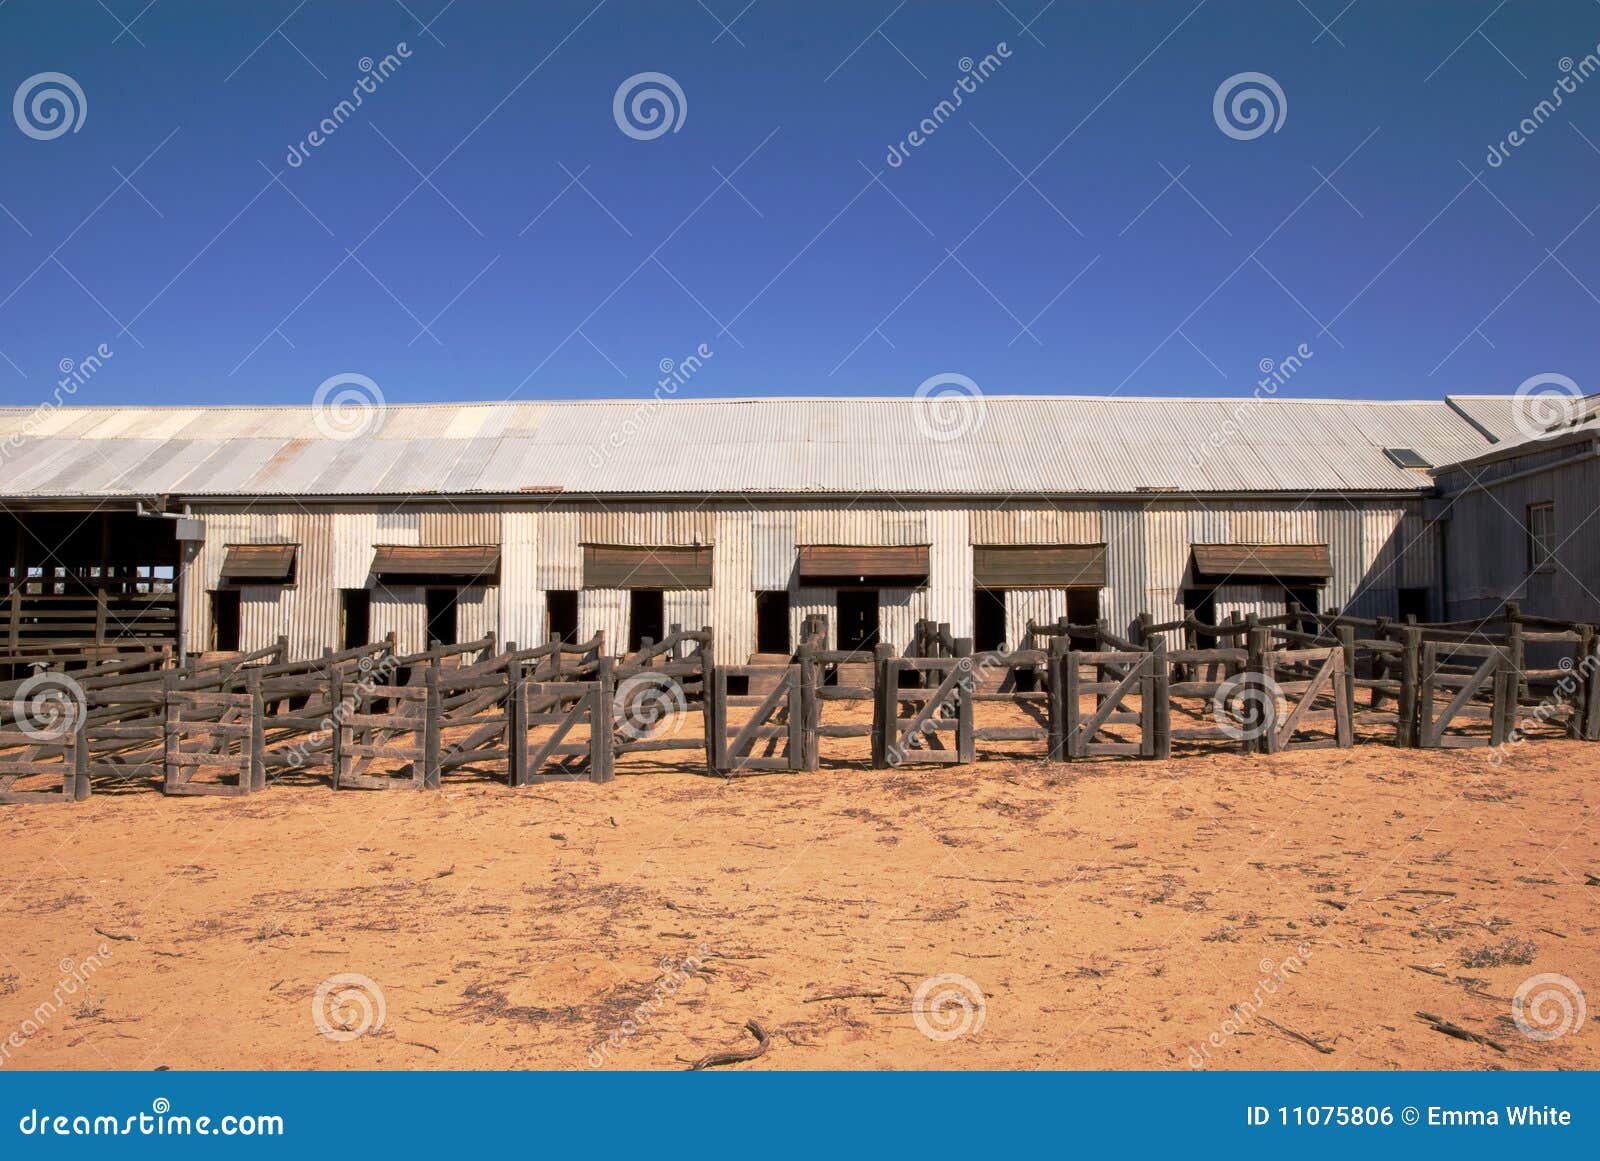 Abandoned Shearing Shed Royalty Free Stock Image - Image: 11075806